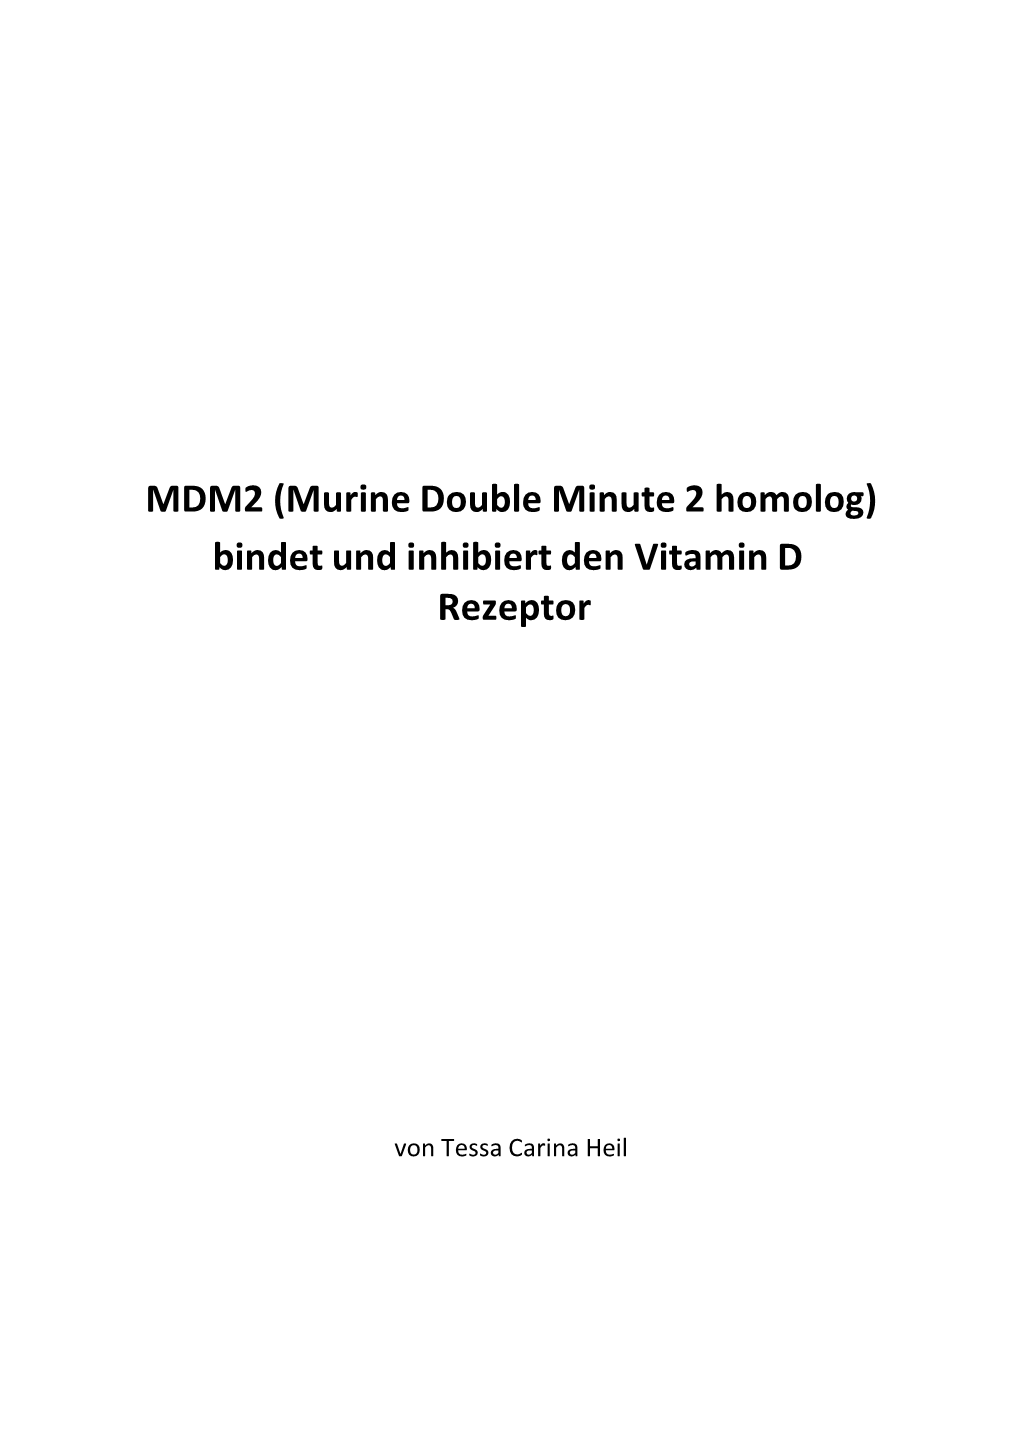 MDM2 (Murine Double Minute 2 Homolog) Bindet Und Inhibiert Den Vitamin D Rezeptor